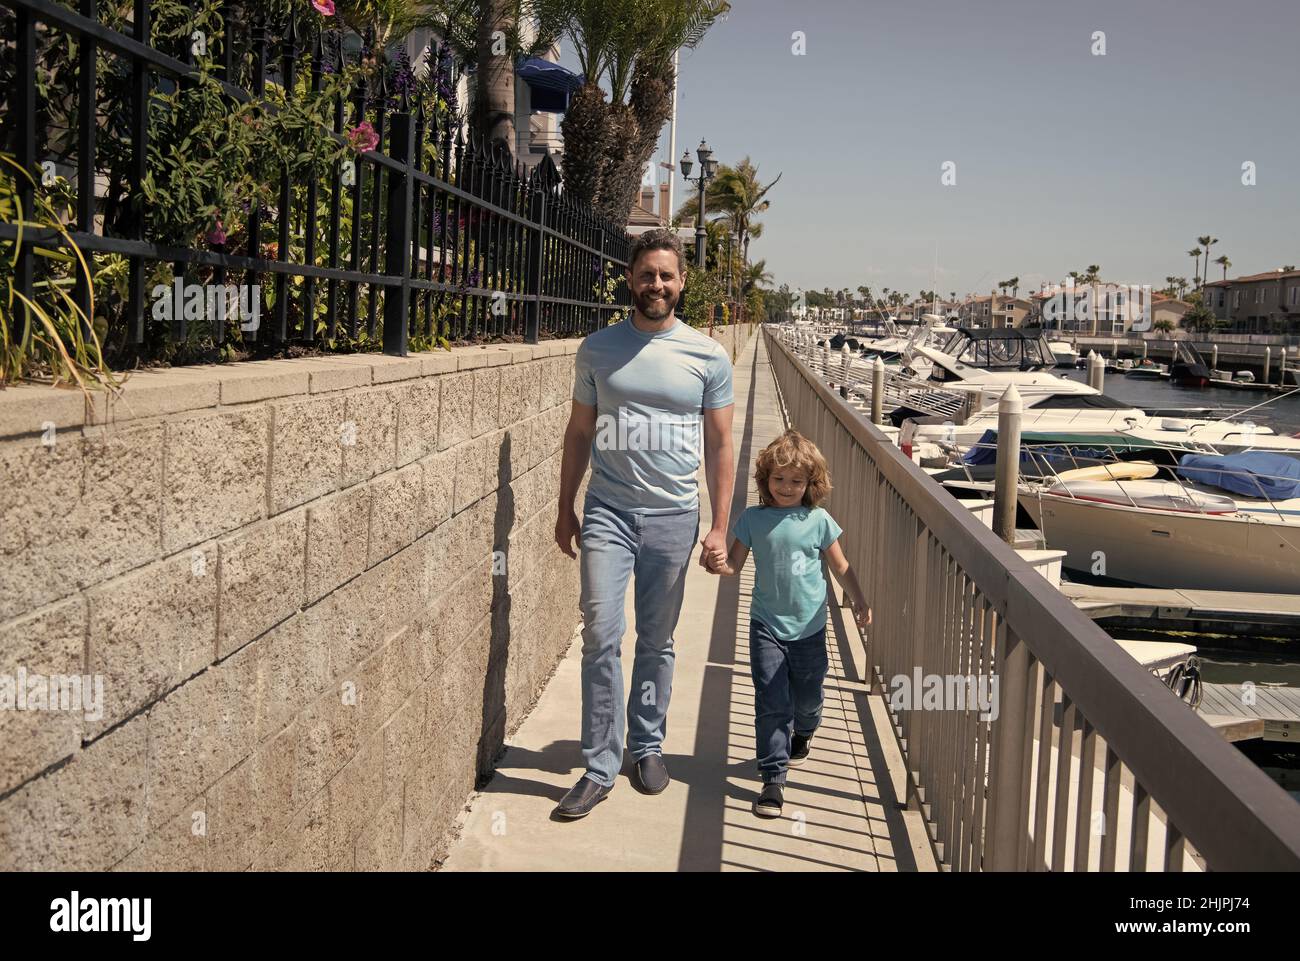 Gemeinsam spazieren gehen. Vater und Sohn gehen mit Händen auf die Promenade. Mann und Kind genießen gemächlichen Spaziergang Stockfoto